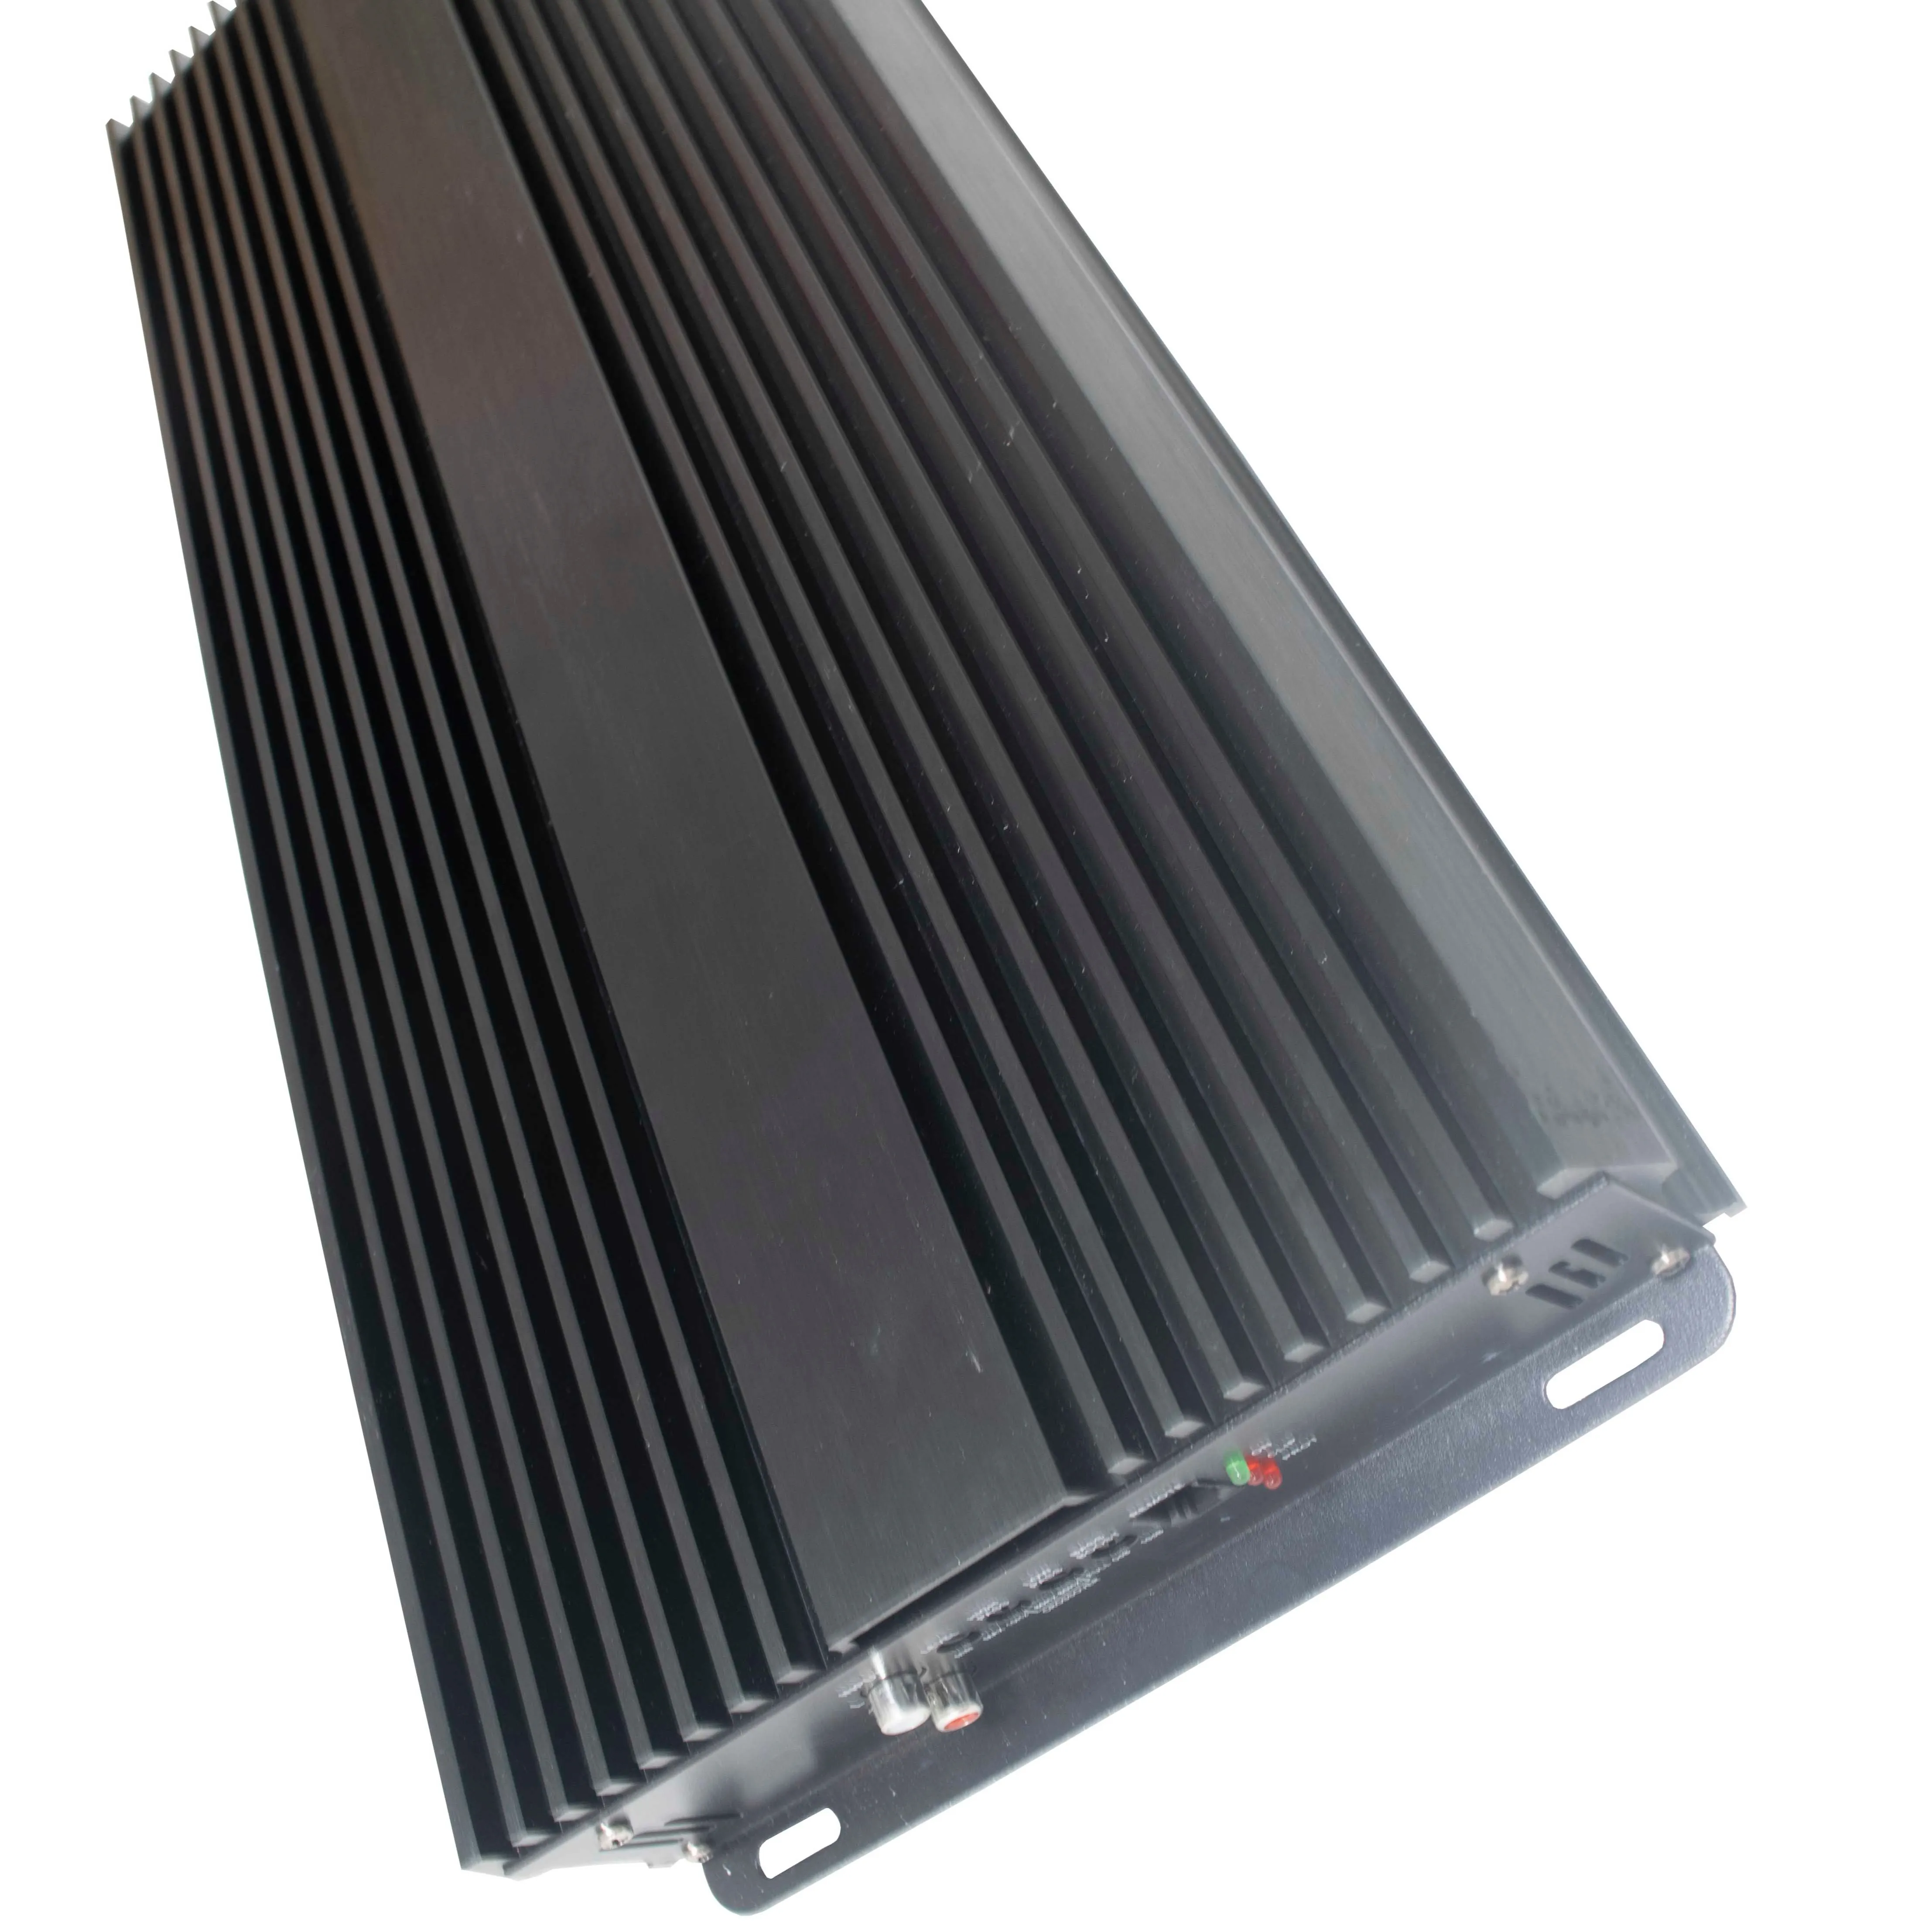 APIEL Class d car bass mono full channel amplifier transformer boost power supply car amplifier 12v high power 5000w